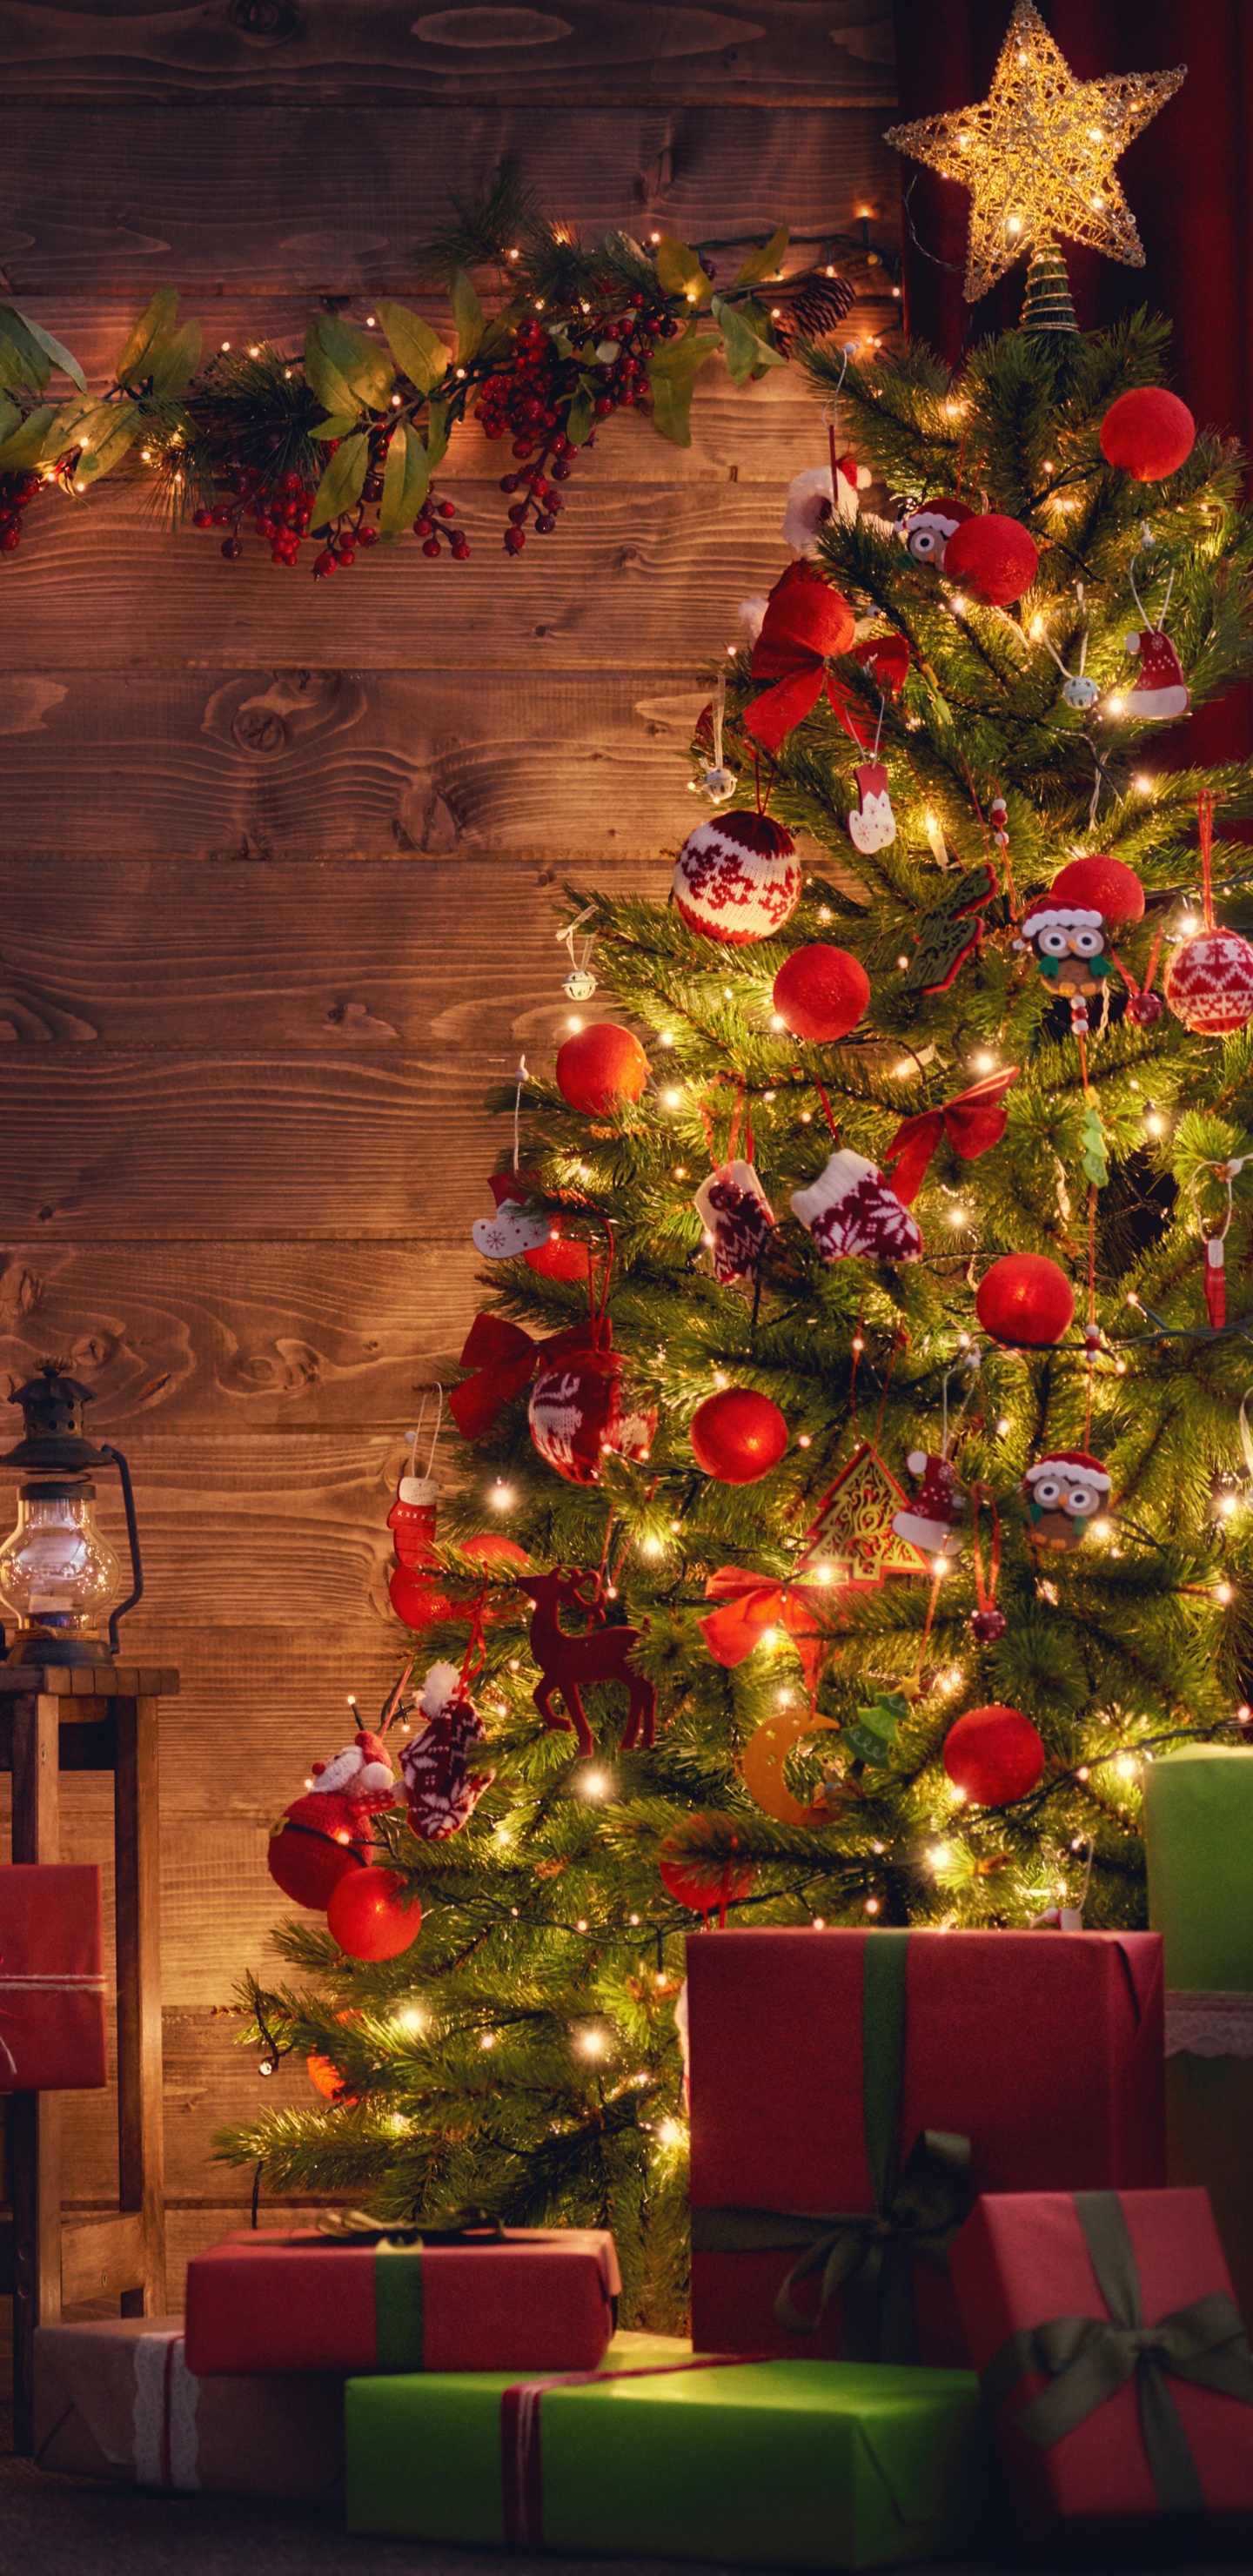 El Día De Navidad, Decoración de la Navidad, Navidad, Luces de Navidad, Calendario de Adviento de Navidad de Madera. Wallpaper in 1440x2960 Resolution